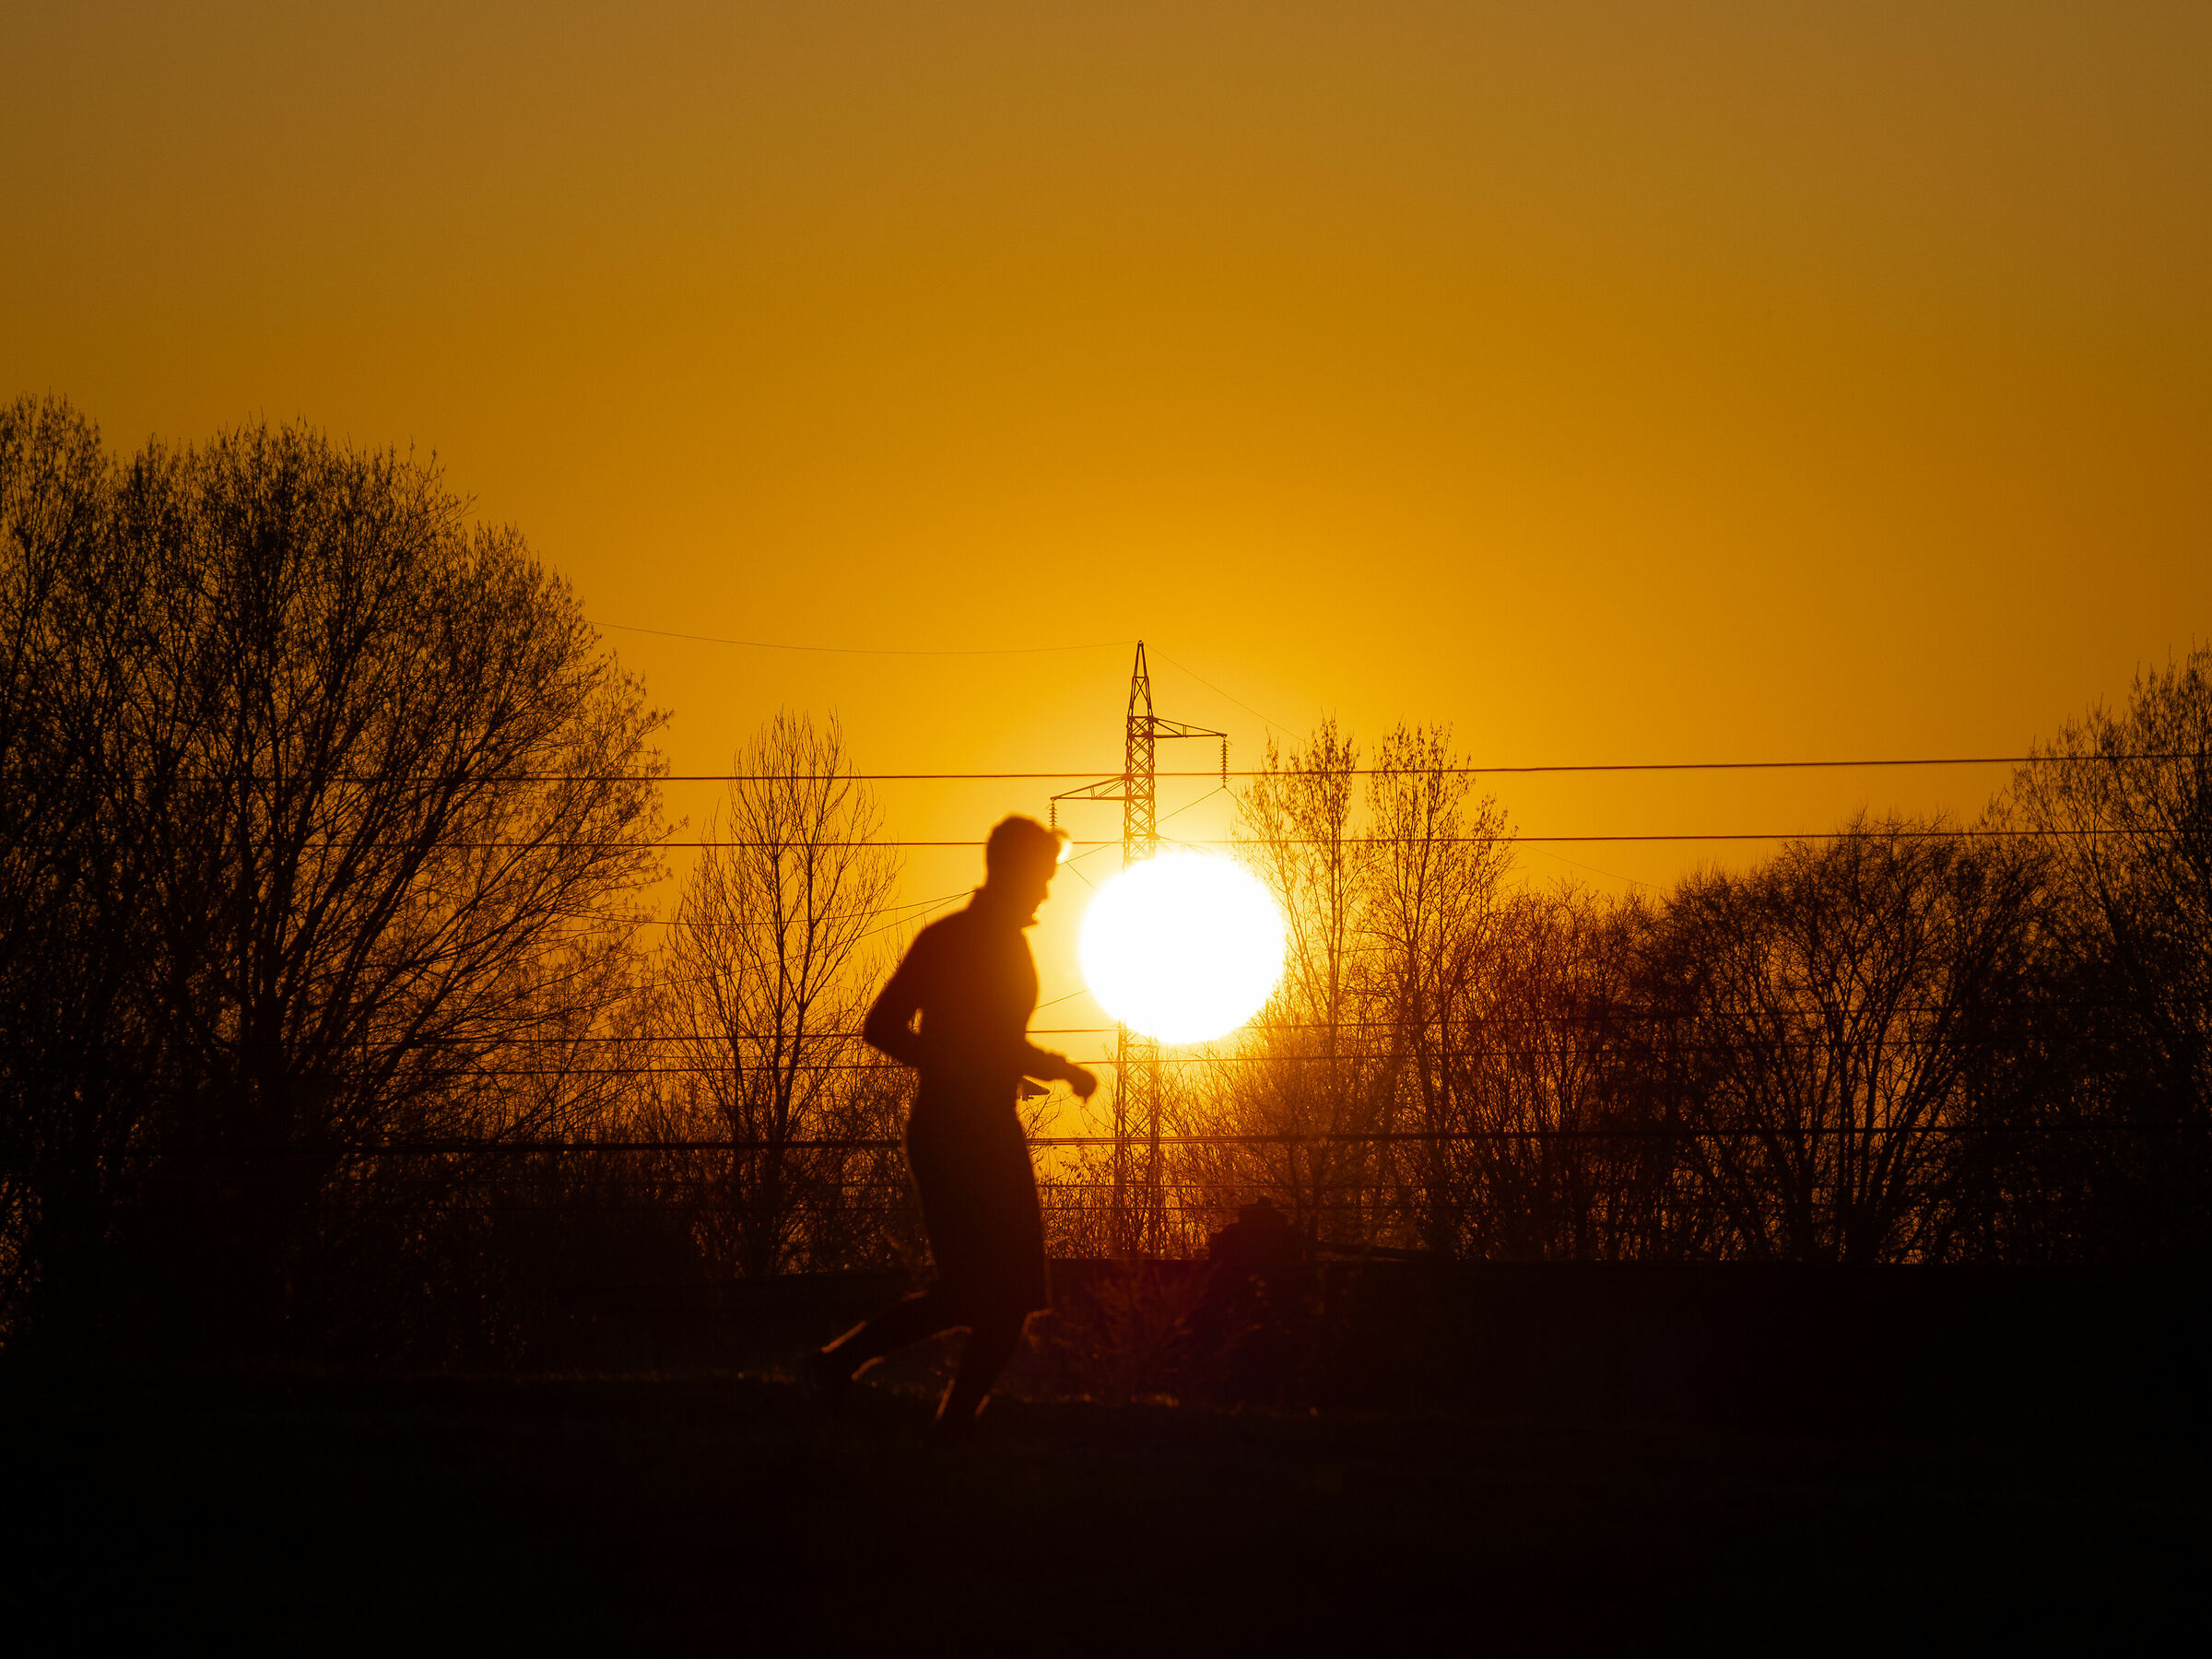 Runner in sunset...